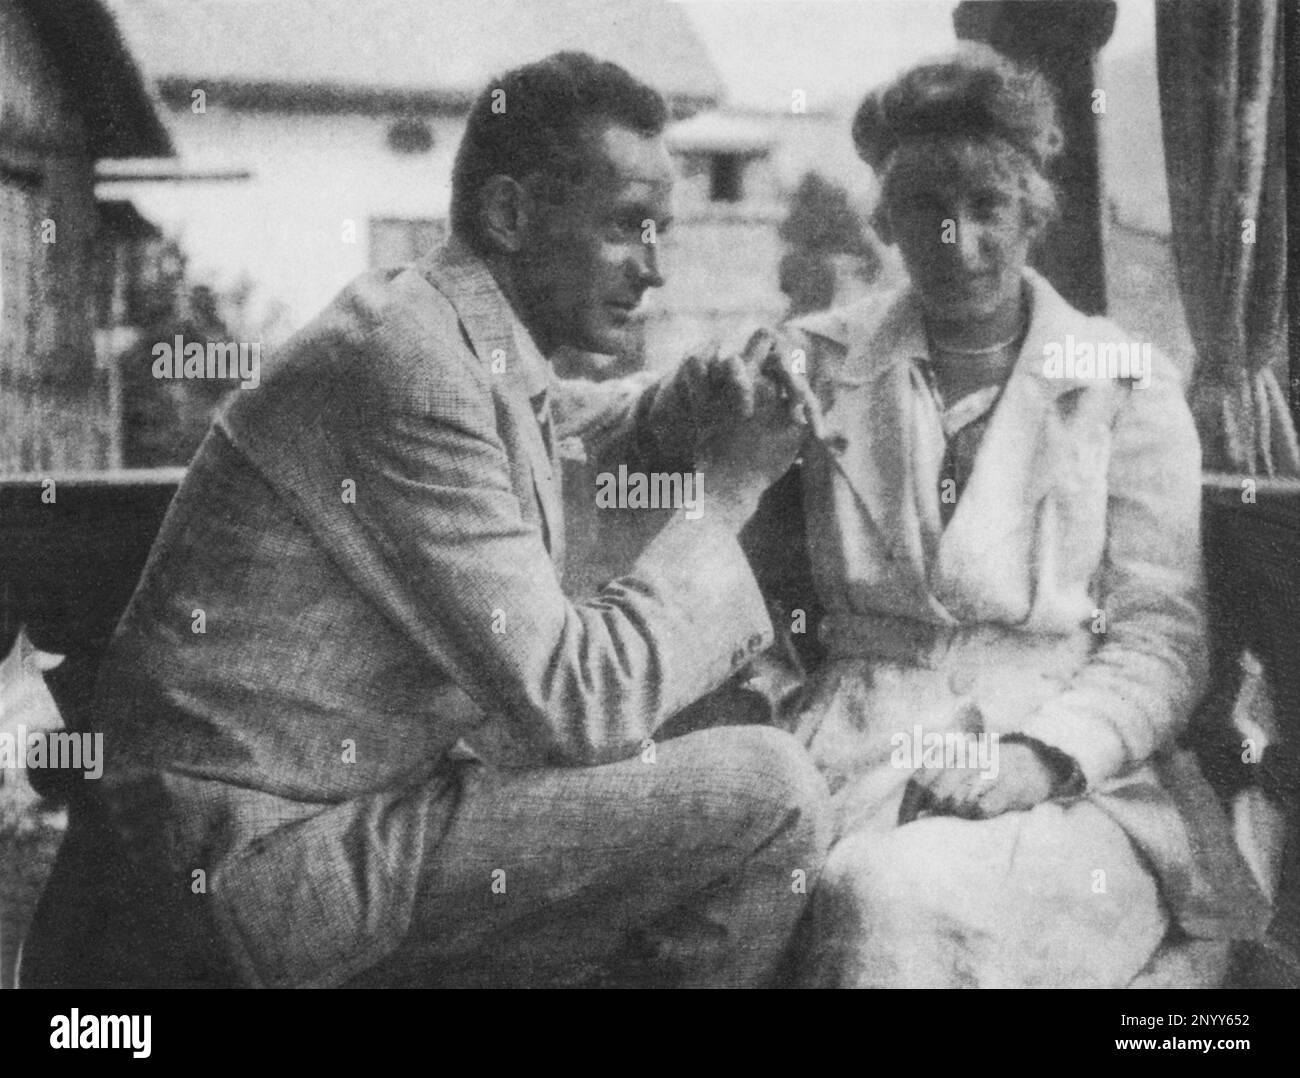 1918 : der österreichische Maler EGON SCHIELE ( Tulln 1890 - Wienn 1918 ) mit seiner Frau EDITH ( 1893 - 1918 ) - ESPRESSIONISTA - ESPRESSIONISMO - Expressionismus - SEZESSION - SECESSIONE WIENNESE - VISUELLE KUNST - ARTI VISIVE - Arte - Rituto - Marioto e Moglie - Coniugi - Coppia - Ehefrau und Hausband - Marioto e Moglie --- Archivio GBB Stockfoto